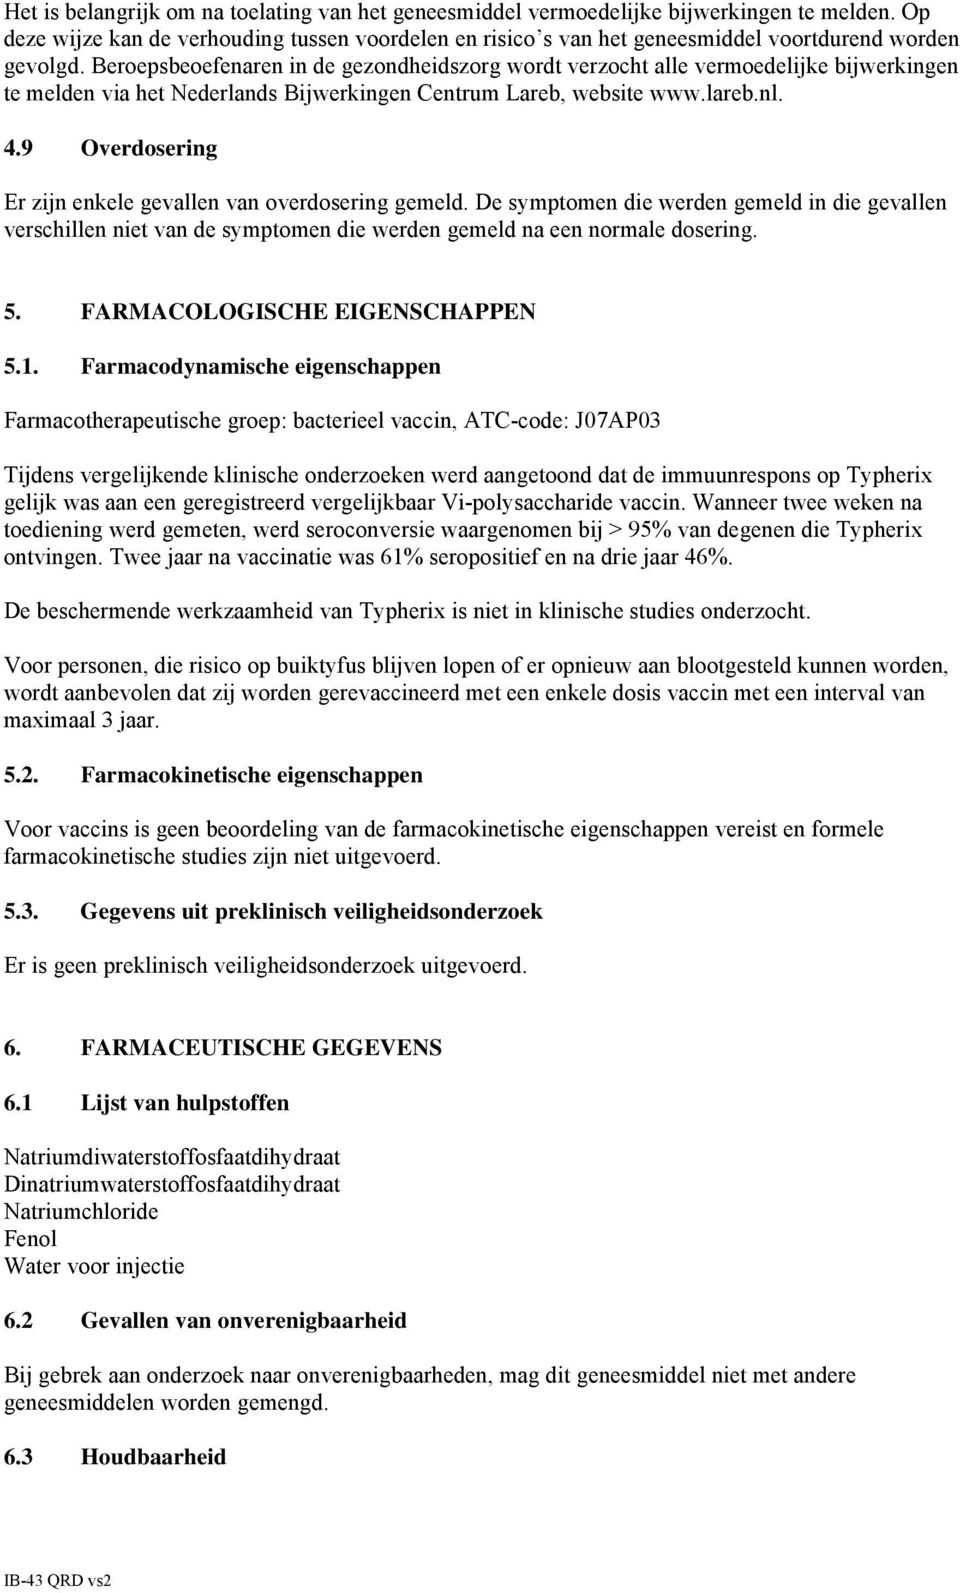 Beroepsbeoefenaren in de gezondheidszorg wordt verzocht alle vermoedelijke bijwerkingen te melden via het Nederlands Bijwerkingen Centrum Lareb, website www.lareb.nl. 4.